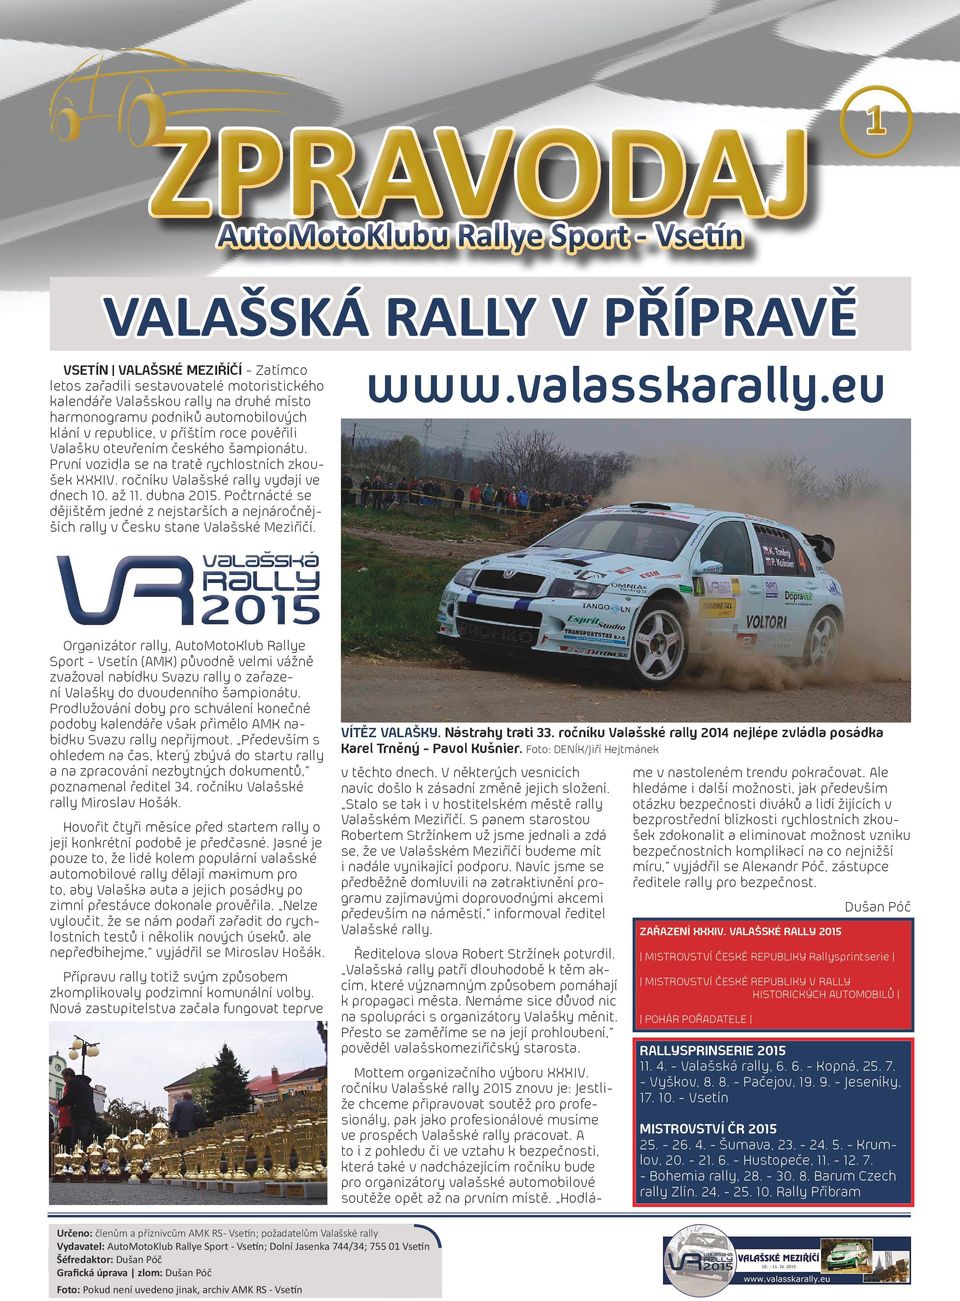 ročníku Valašské rally vydají ve dnech 10. až 11. dubna 2015. Počtrnácté se dějištěm jedné z nejstarších a nejnáročnějších rally v Česku stane Valašské Meziříčí. www.valasskarally.